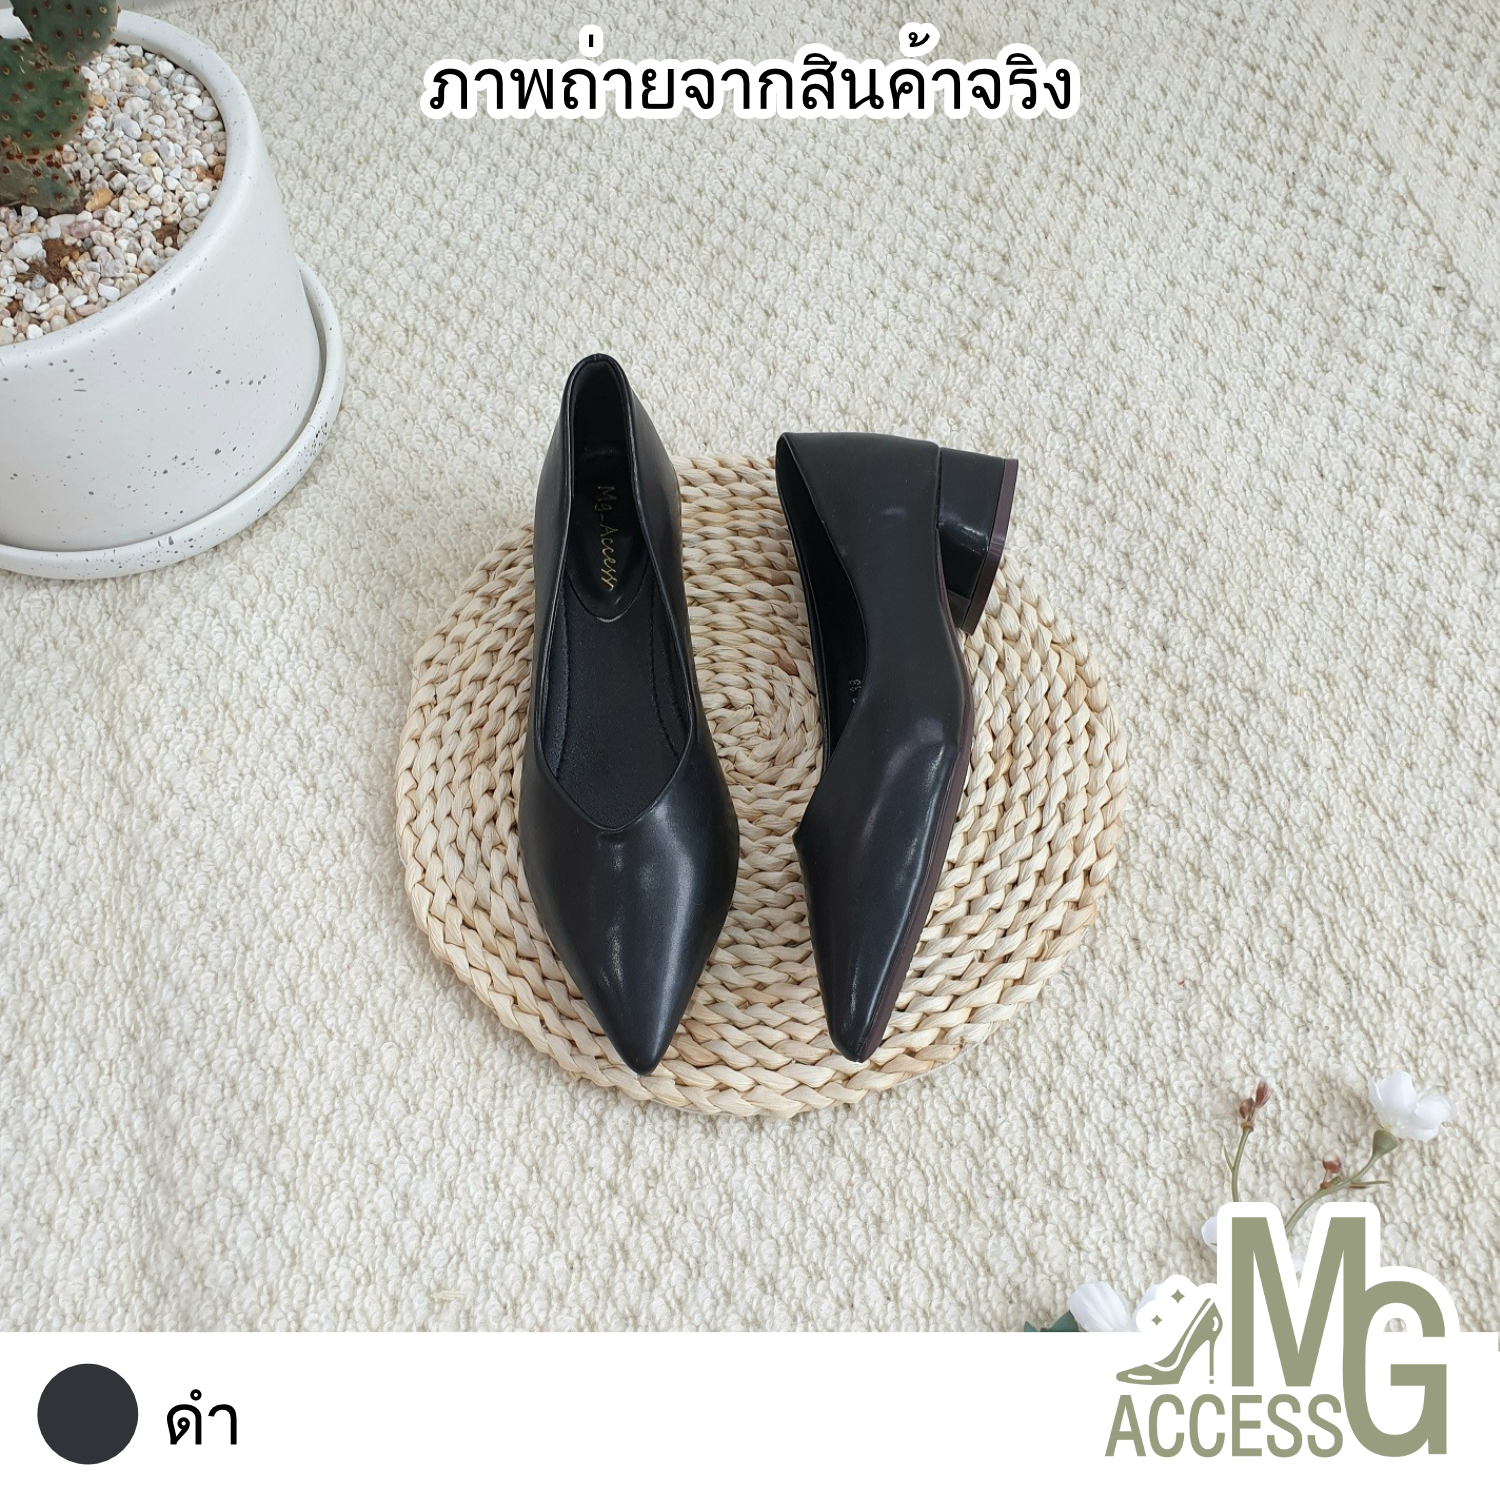 MG access สินค้าแท้ รองเท้าผู้หญิง คัชชูผู้หญิง รองเท้าส้นสูง รองเท้าออกงาน รหัสสินค้า 2928